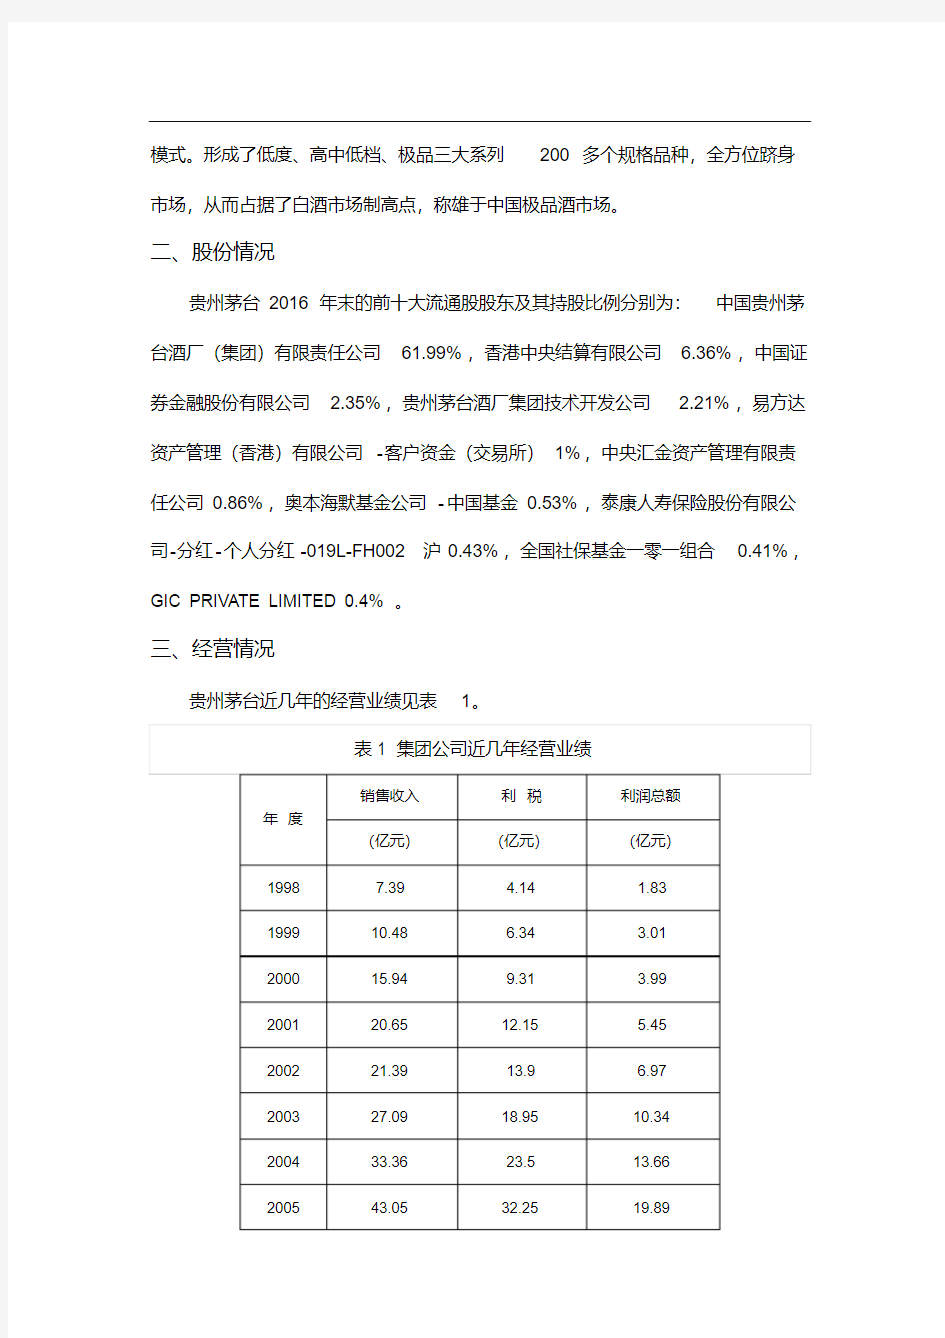 贵州茅台财务报表分析-新版.pdf